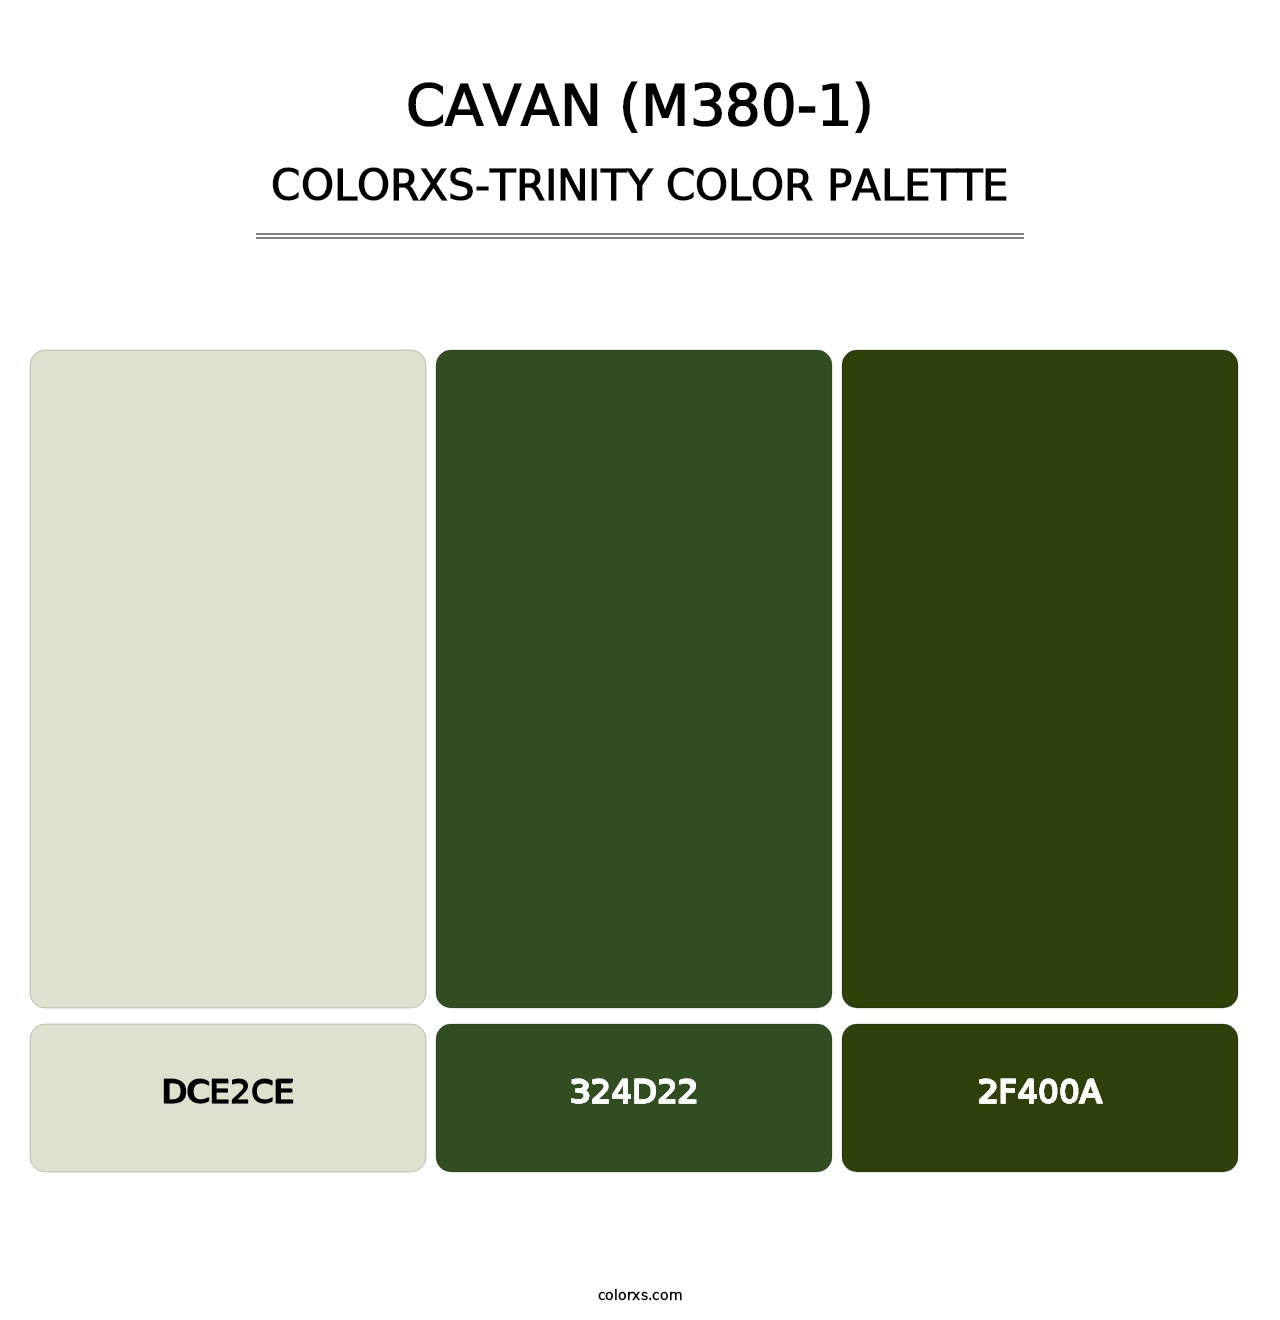 Cavan (M380-1) - Colorxs Trinity Palette